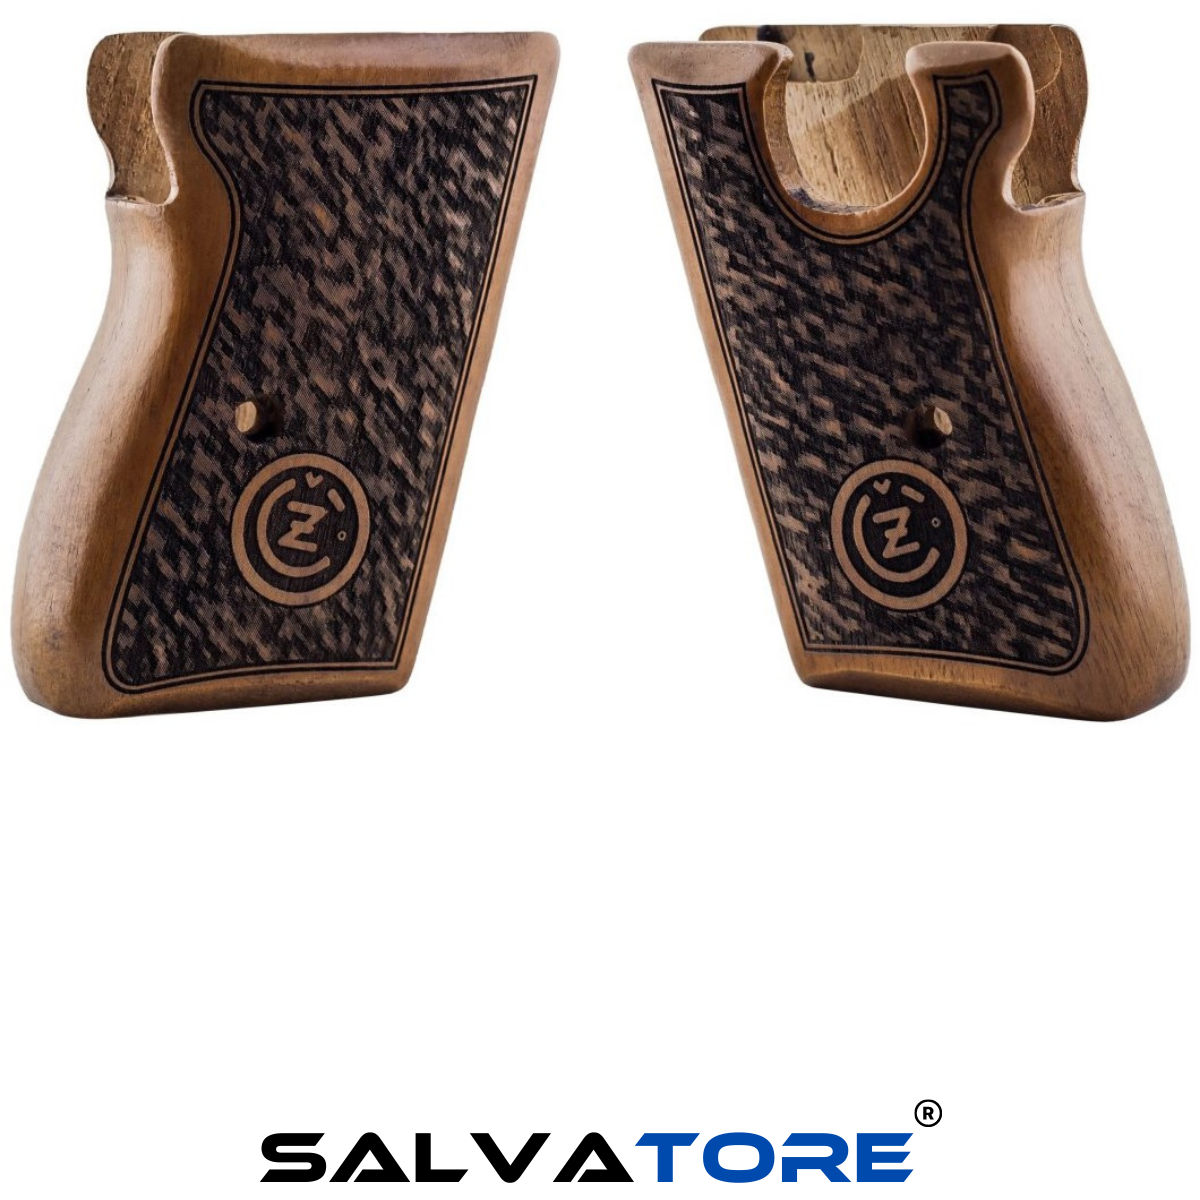 Salvatore Pistol Grips Revolver Grips For Czech VZ Vz 70 Handmade Walnut Gun Accessories Hunting Shooting